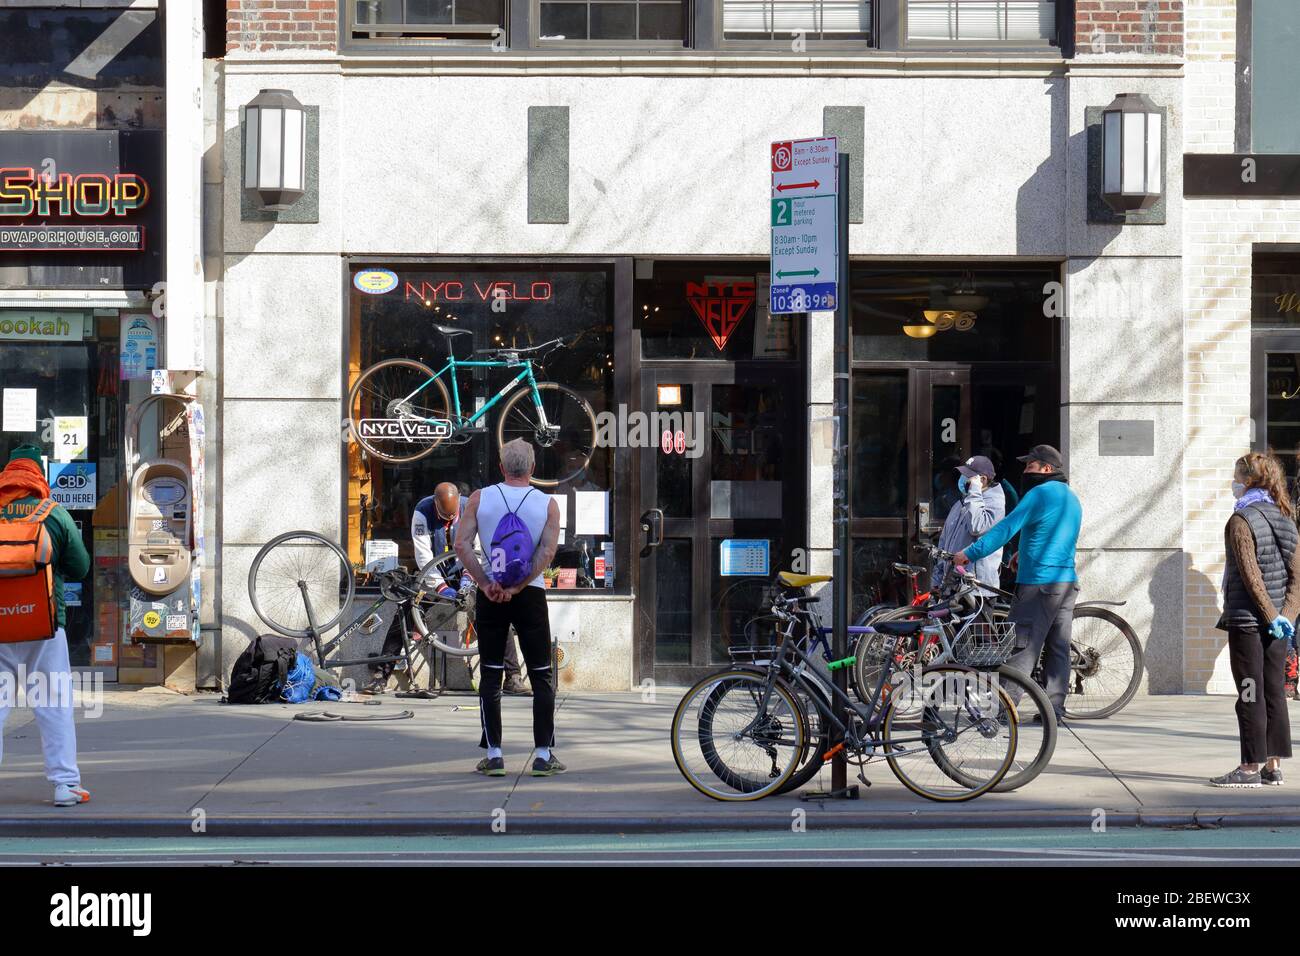 Menschen, die Masken tragen und soziale Distanz, während sie vor einer Fahrradwerkstatt in New York während des Coronavirus warten... WEITERE INFORMATIONEN FINDEN SIE UNTER „VOLLSTÄNDIGE BILDUNTERSCHRIFT“ Stockfoto